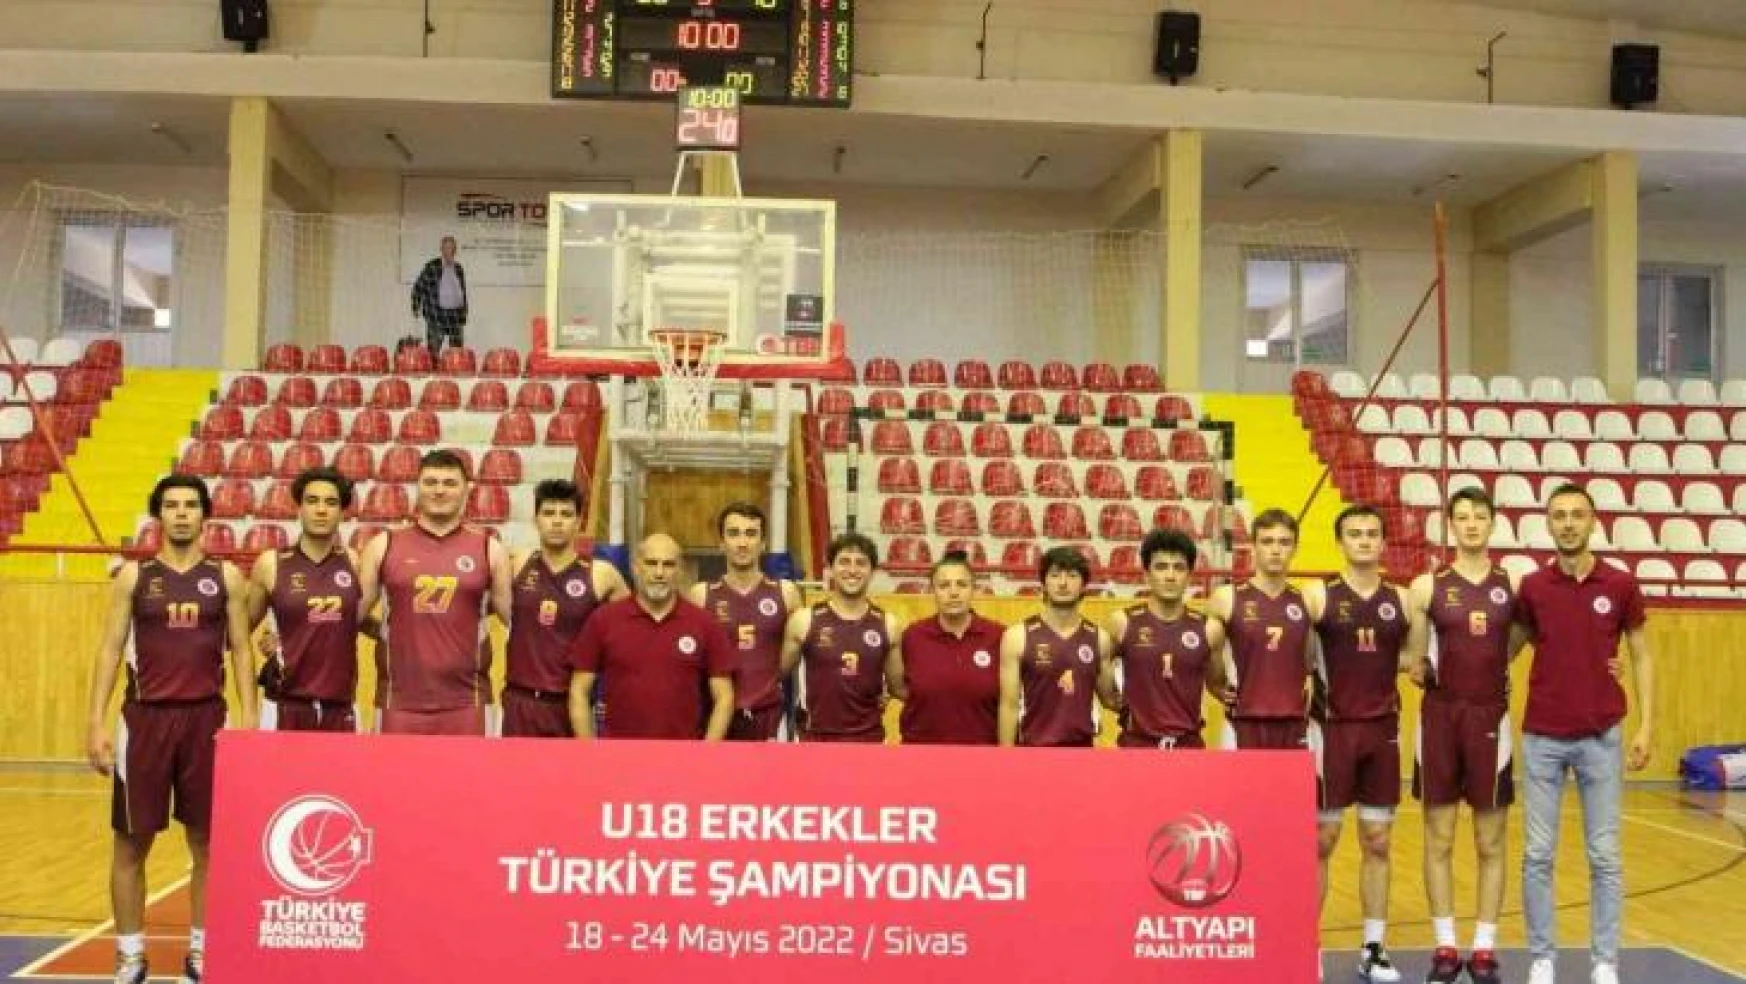 TREDAŞ Spor U18 Erkek Basketbol Takımı, Türkiye Şampiyonası'nda iz bıraktı